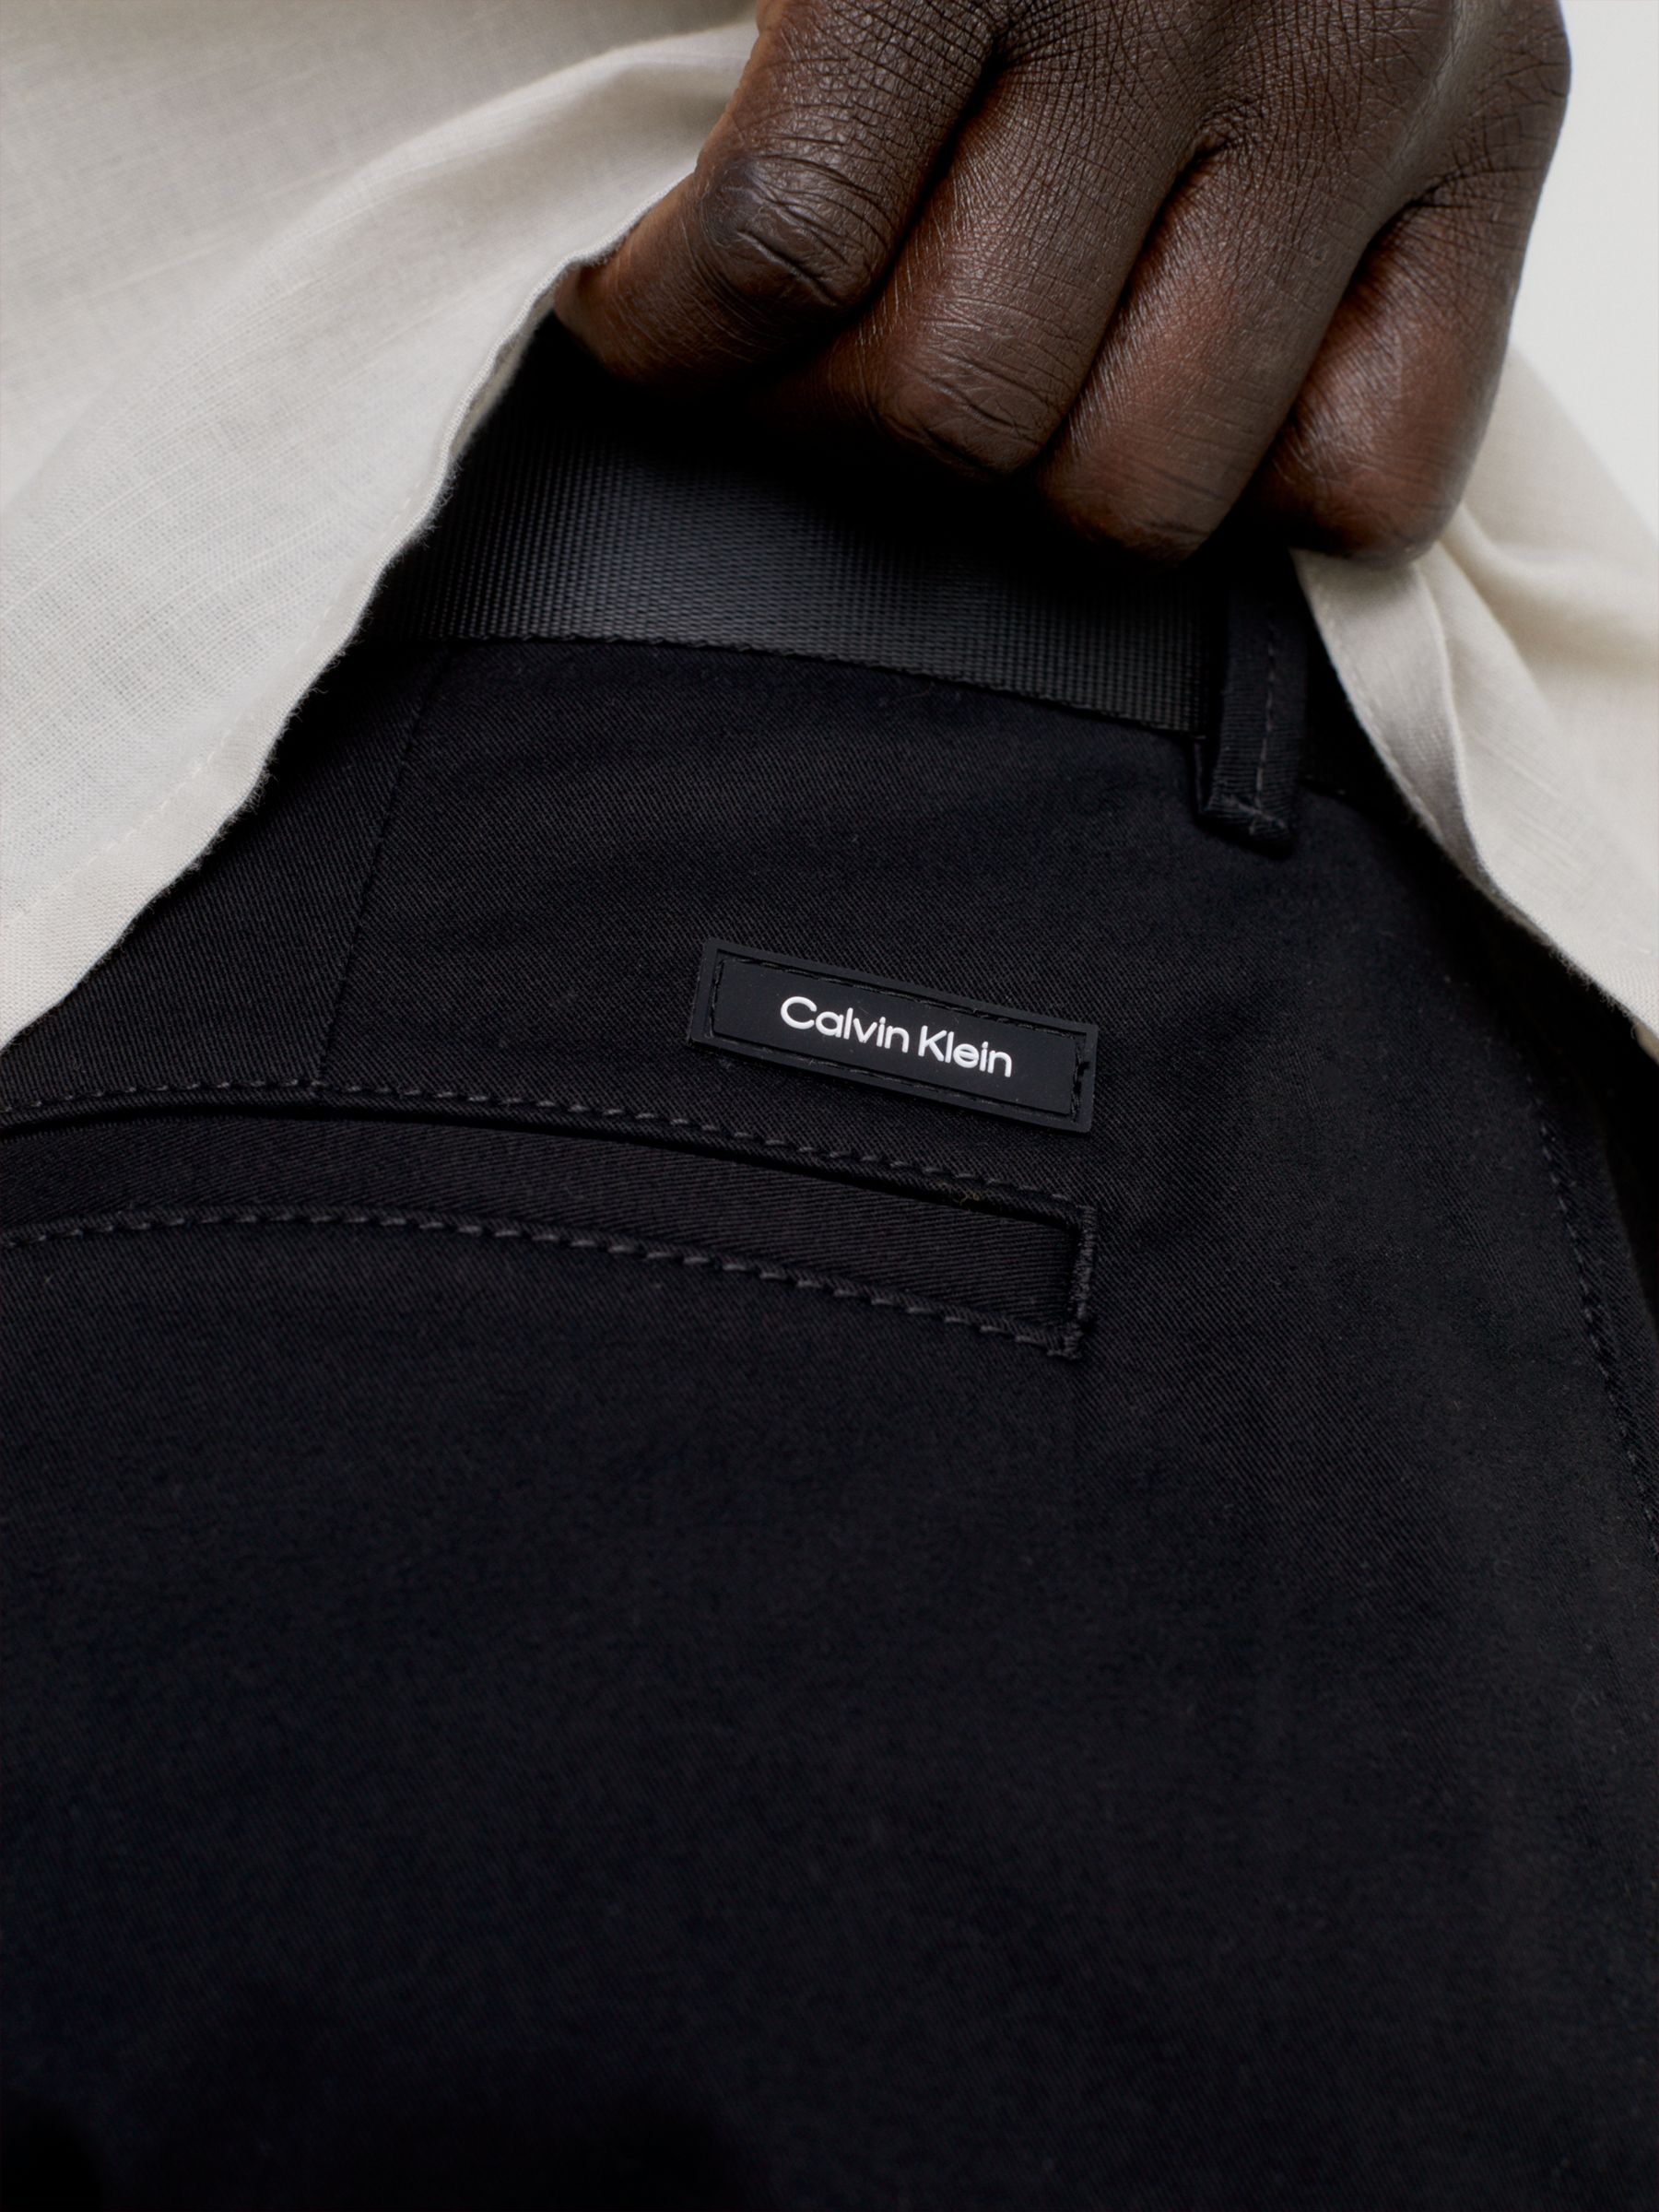 Calvin Klein Cotton Twill Slim Fit Chinos, Ck Black, W32/L32